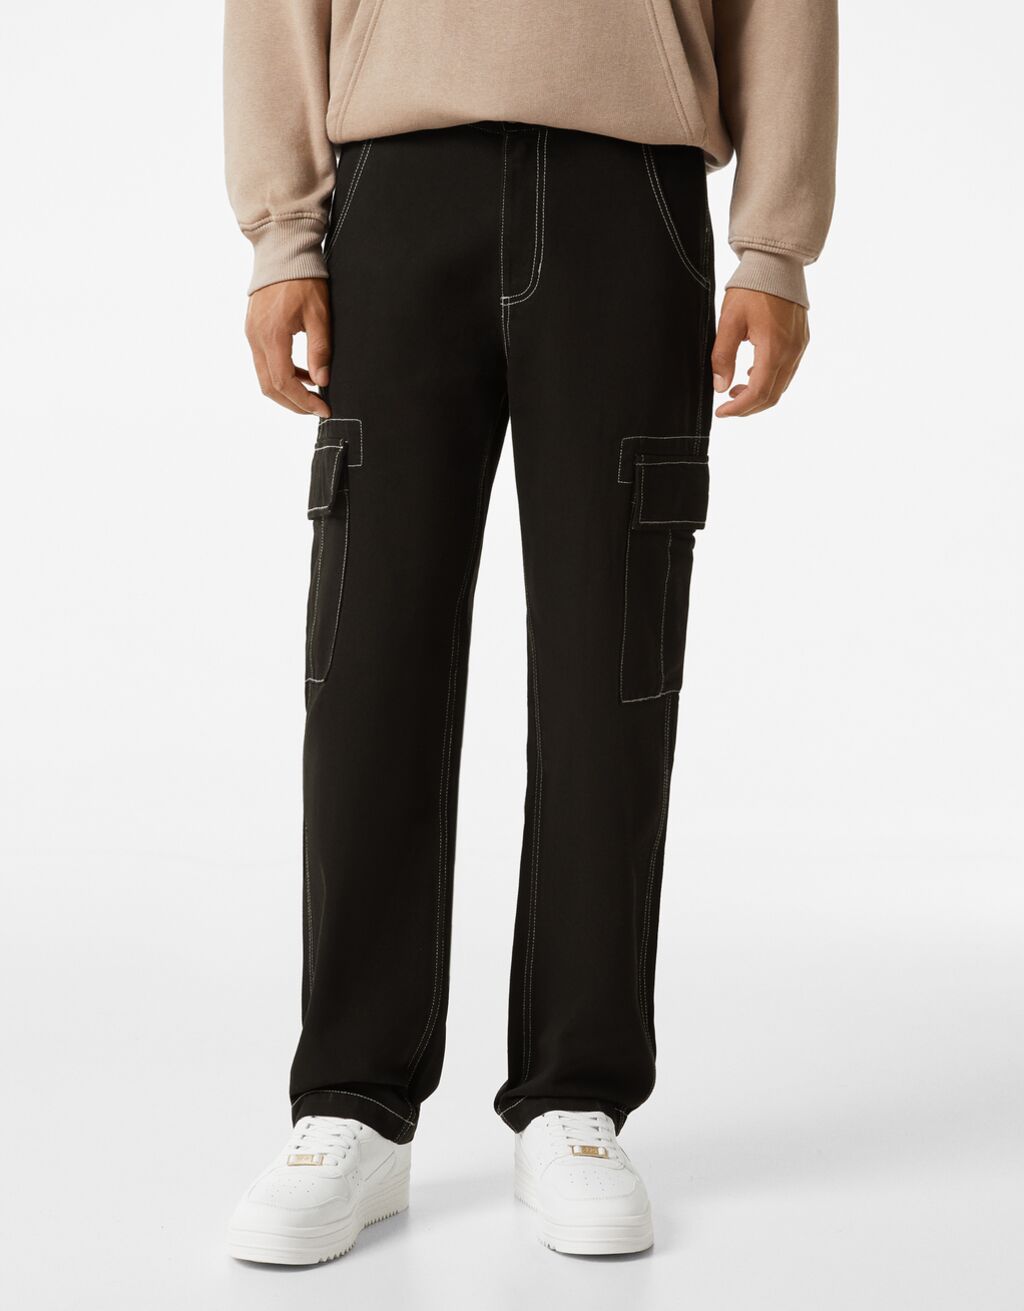 Kalhoty cargo s širokými nohavicemi a kontrastním prošitím